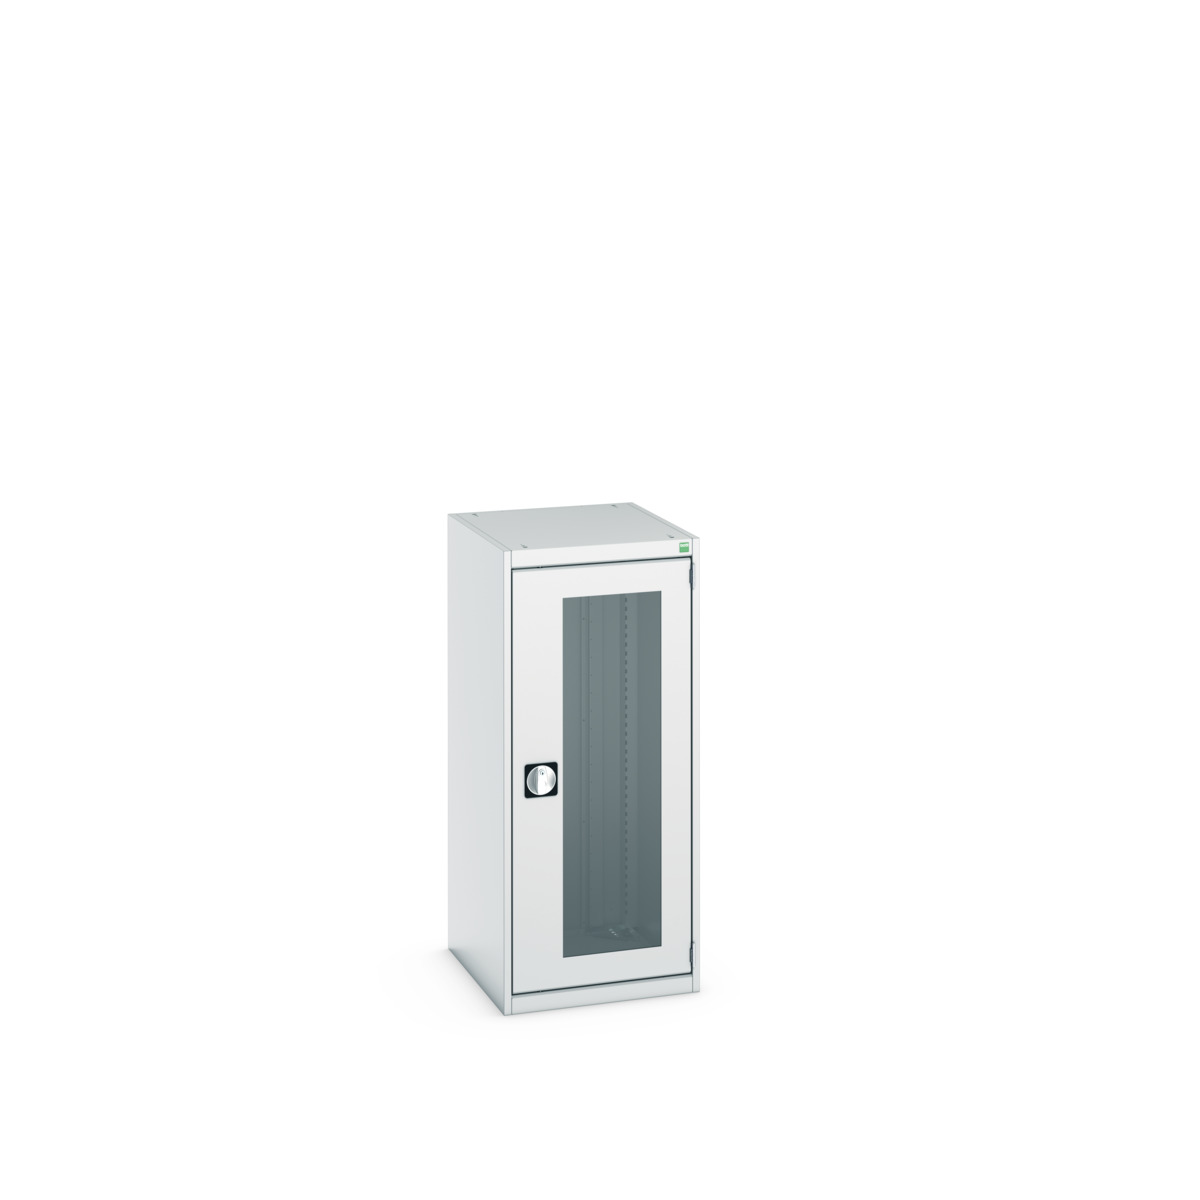 40018140.16V - cubio cupboard